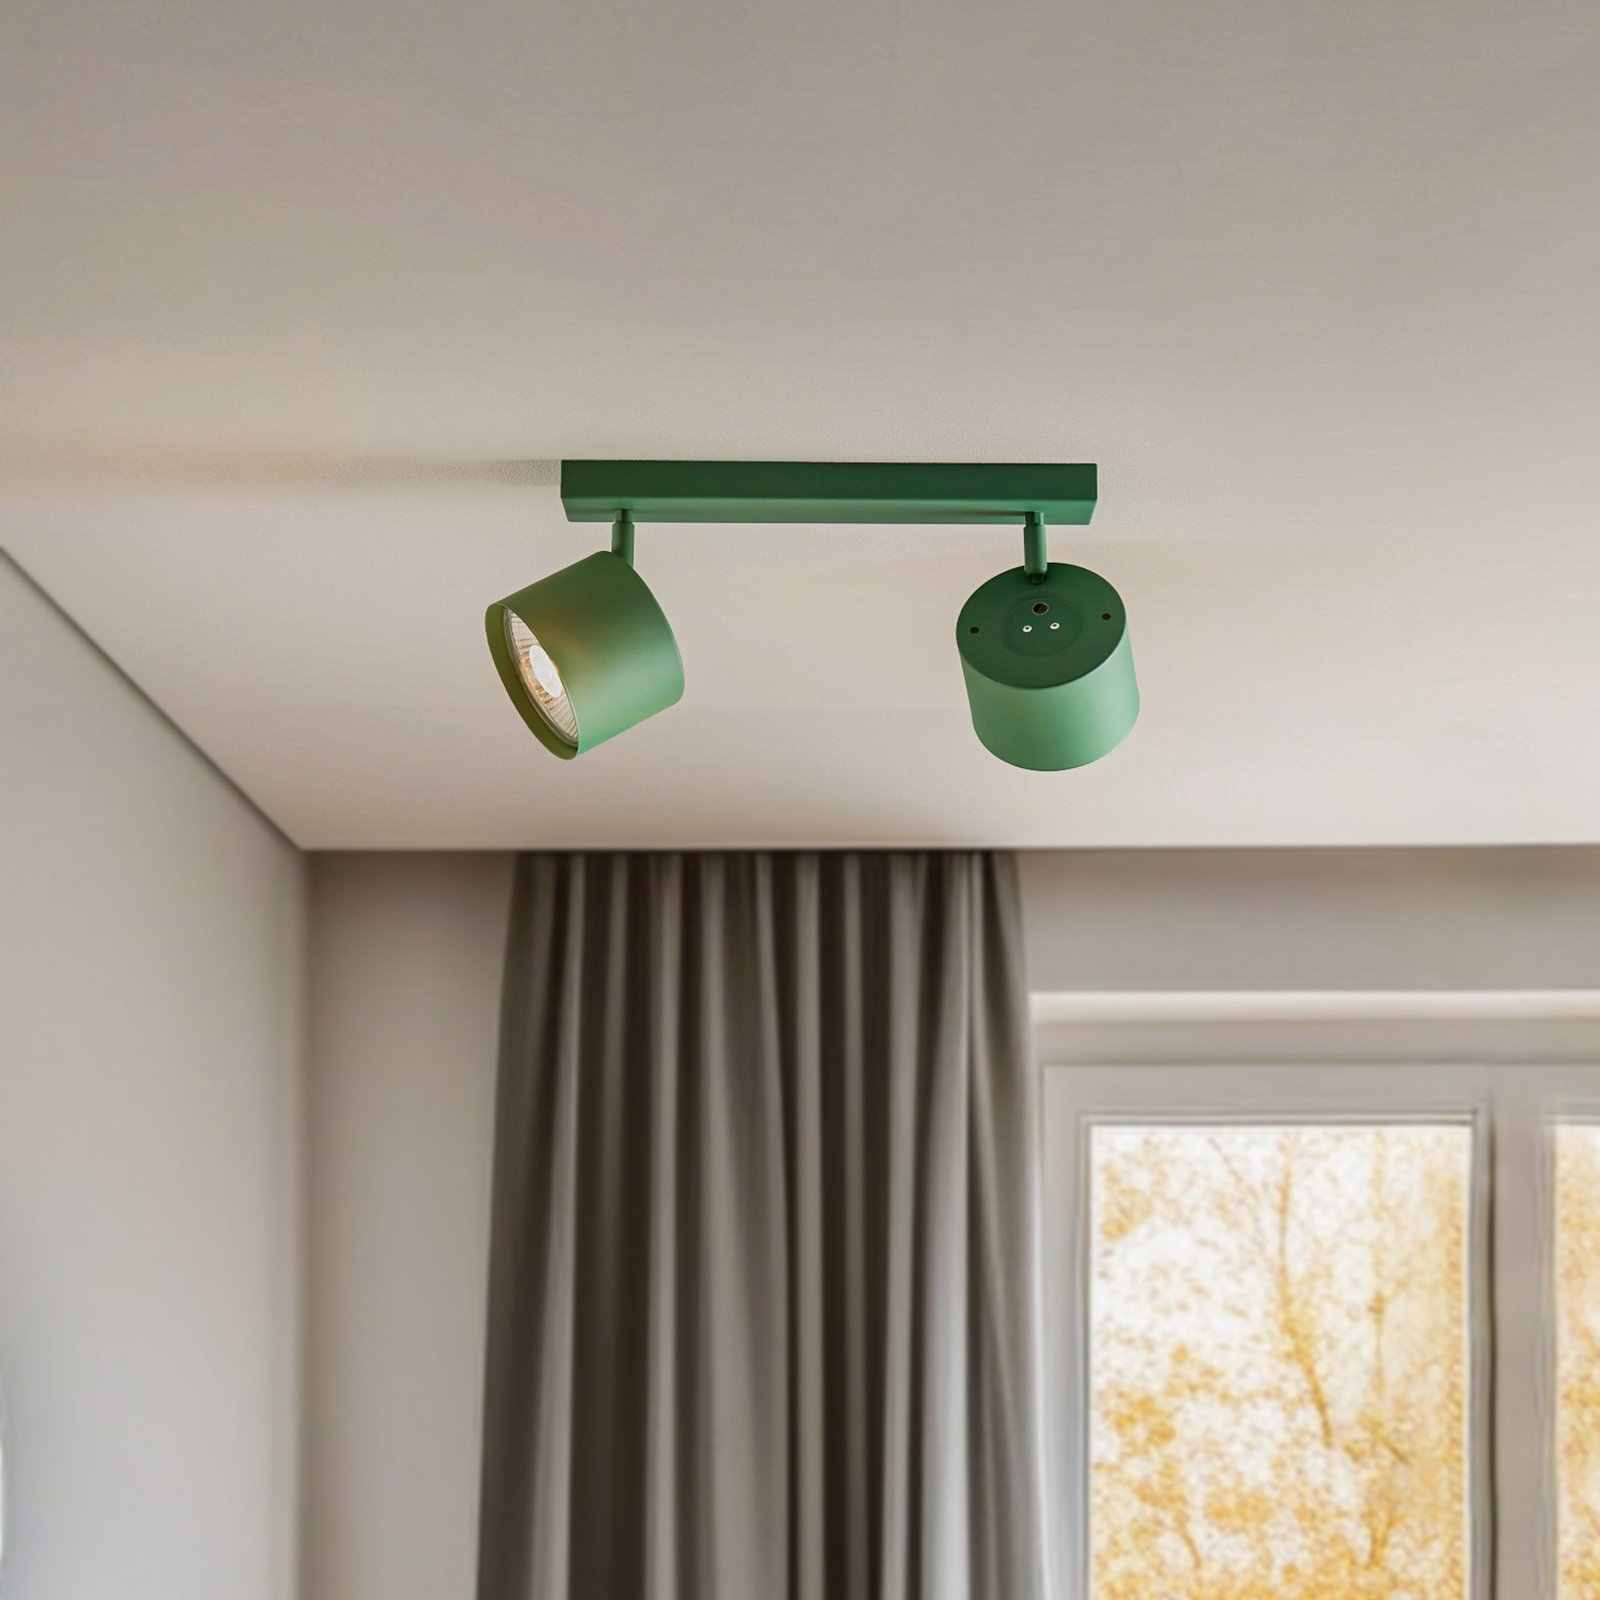 Projetor de teto Chloe ajustável com duas luzes, verde